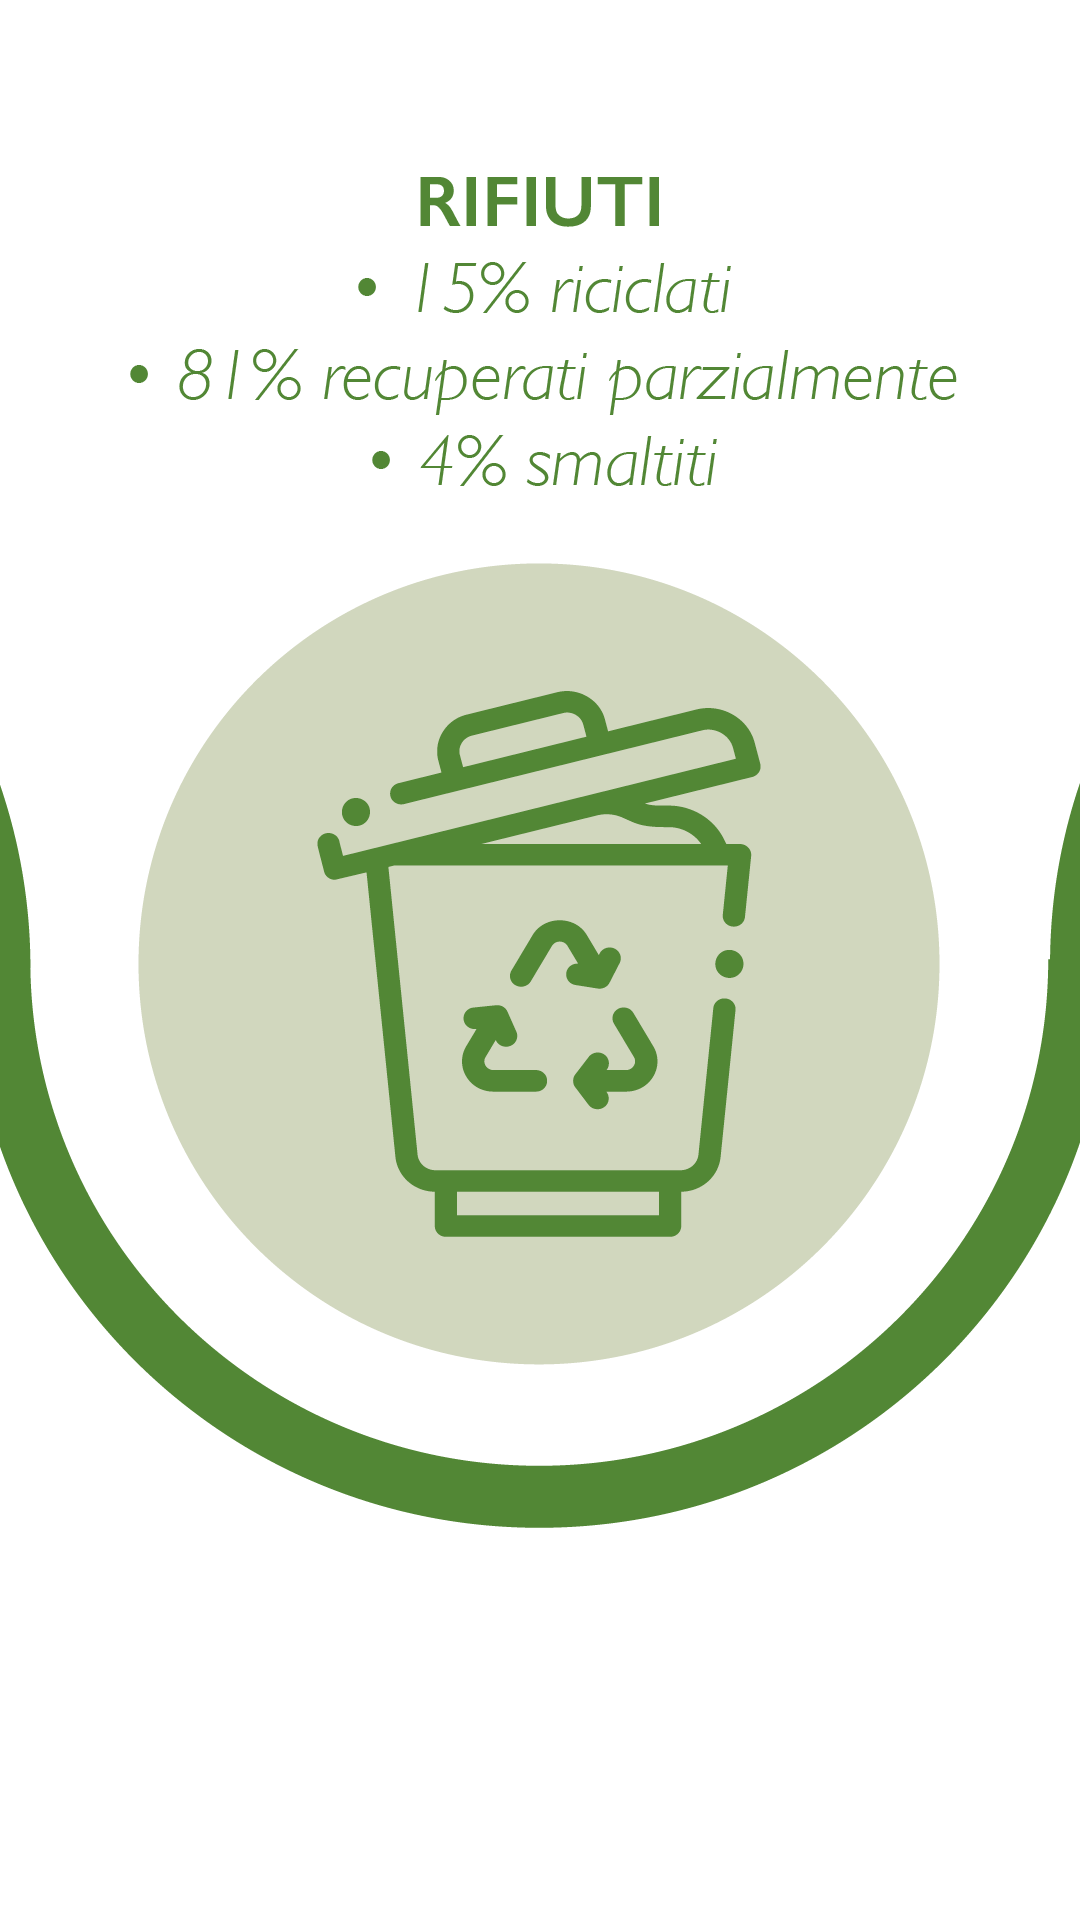 RIFIUTI - 15% riciclati - 81% recuperati parzialmente - 4% smaltiti